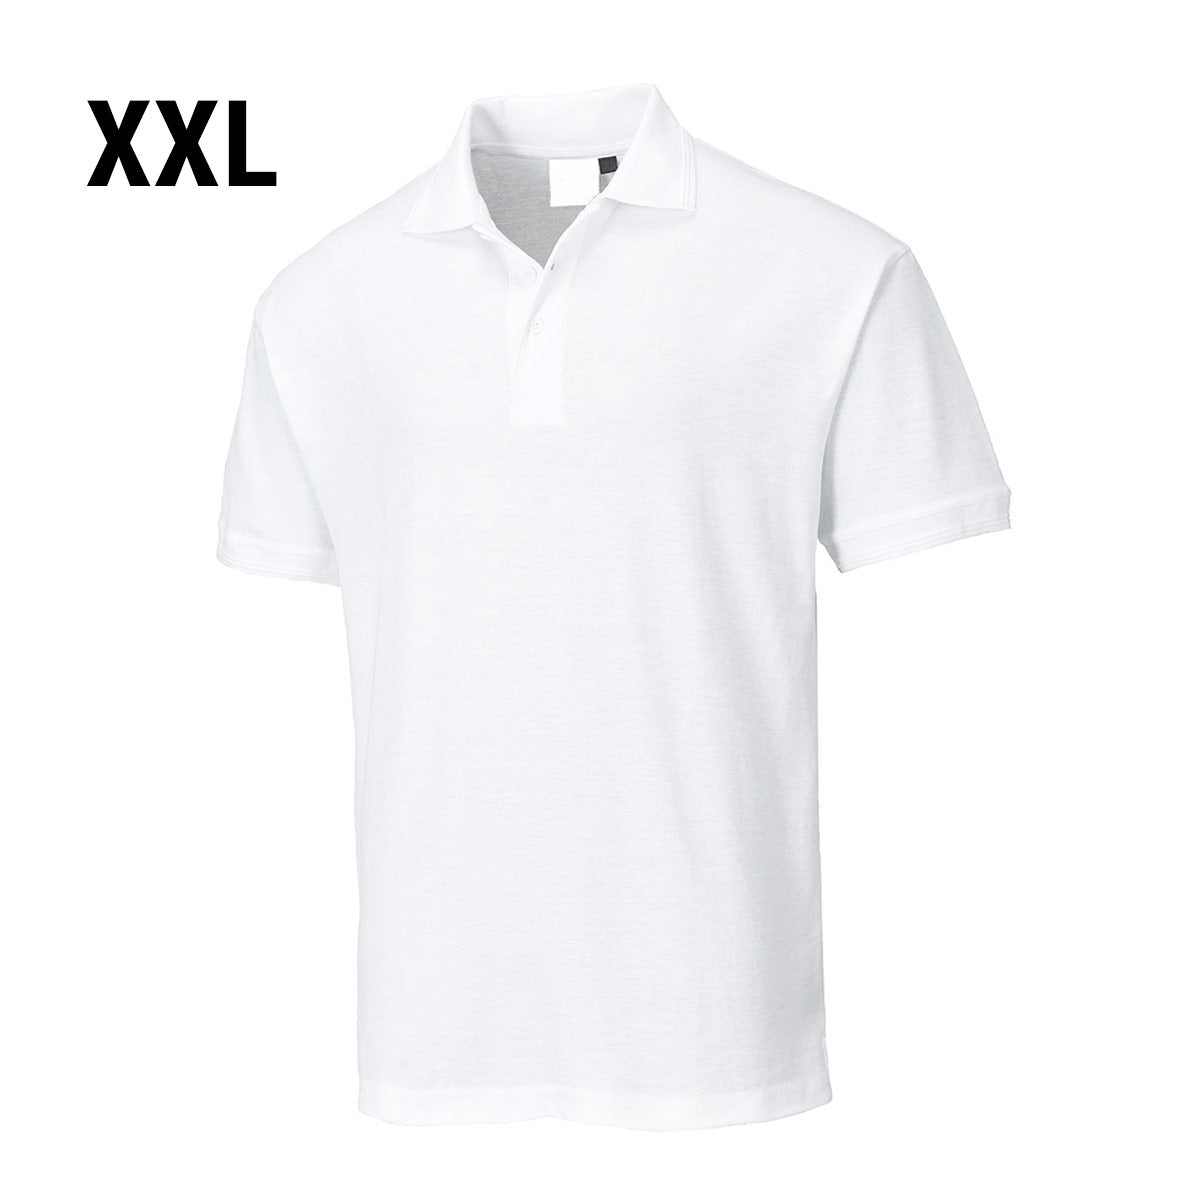 Polo shirt til mænd - Hvid - Størrelse: XXL